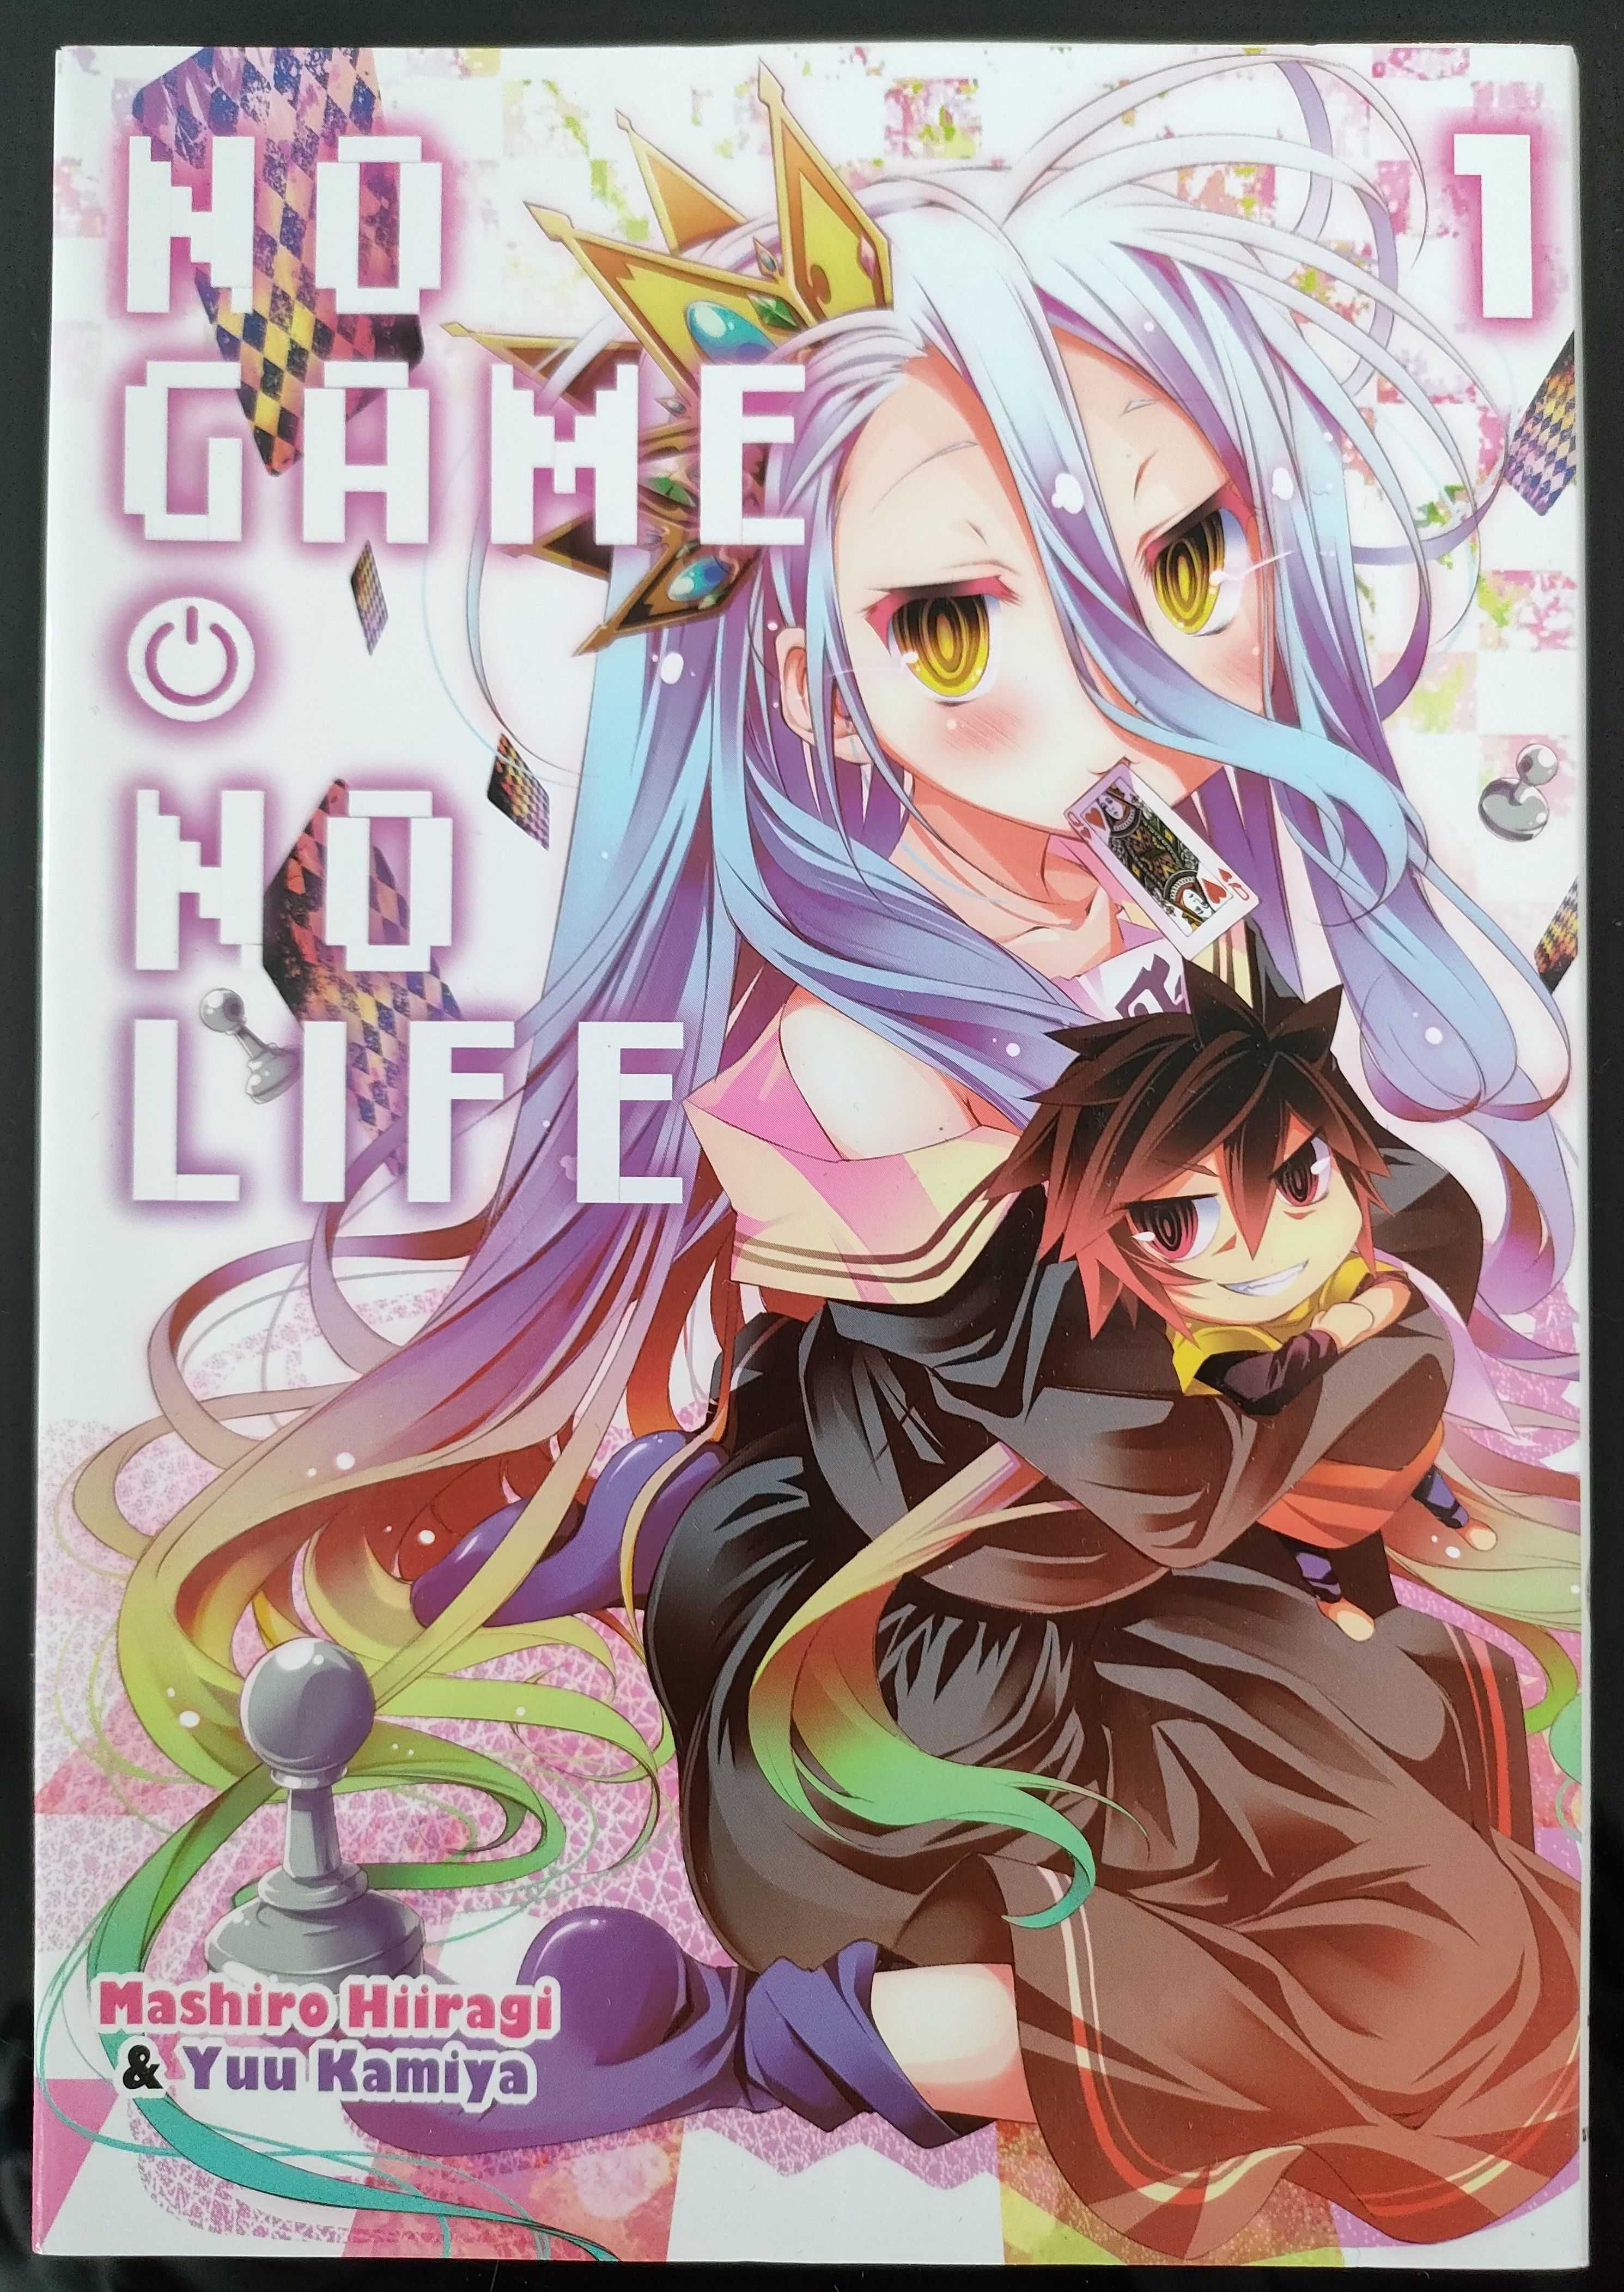 Manga No Game No Life - tom 1 - 1 wydanie